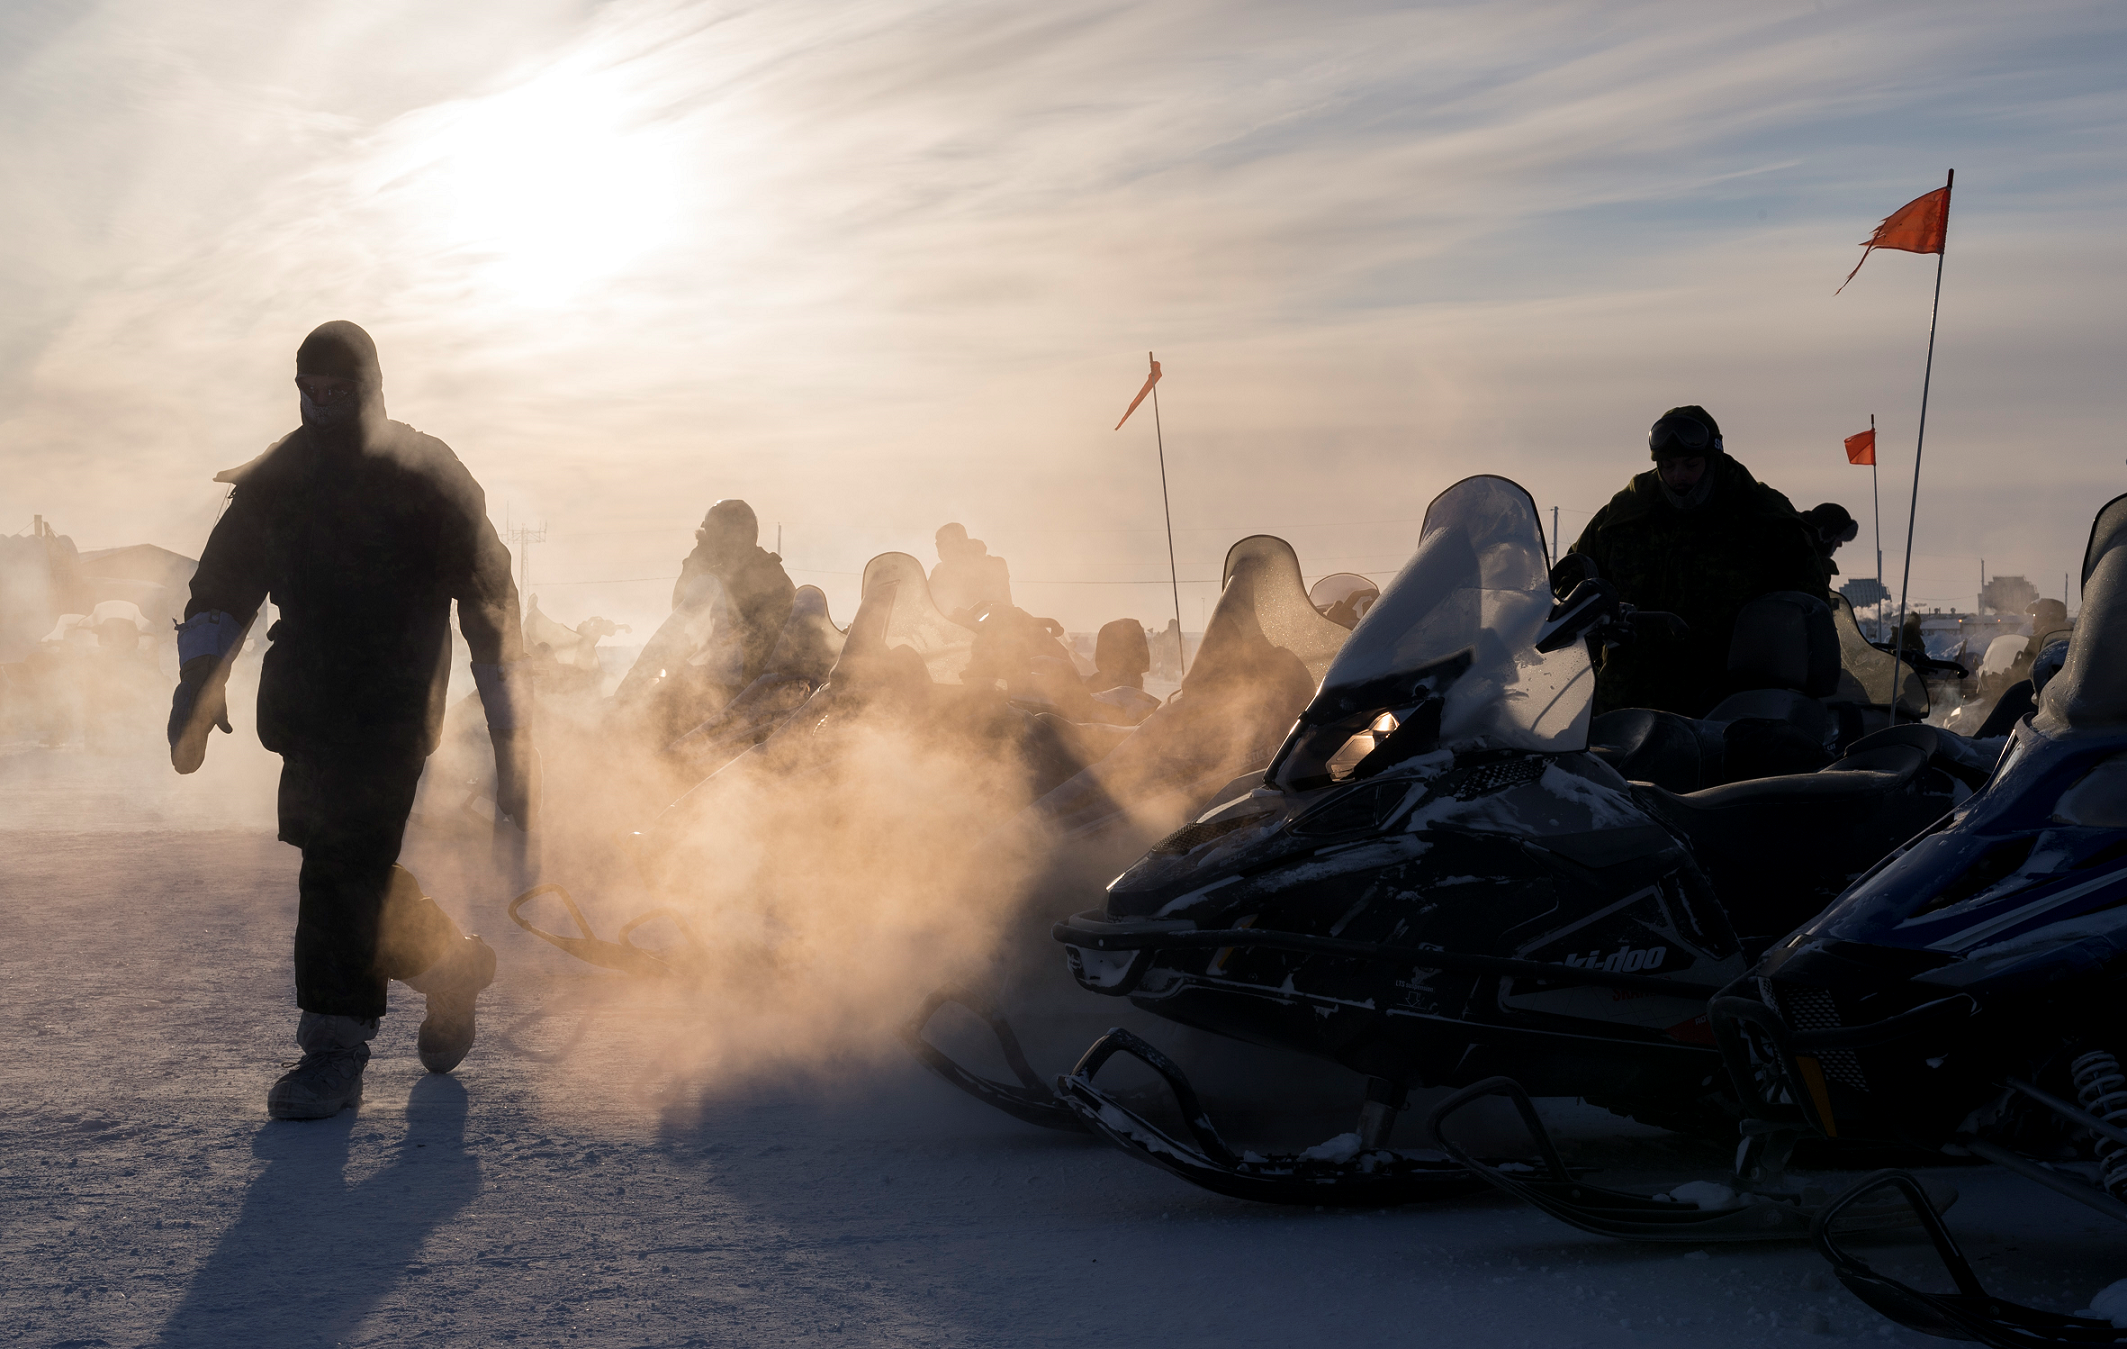 24 février 2017. Des membres en déploiement du 12e Régiment blindé du Canada réchauffent les moteurs des motoneiges en vue d’une patrouille au cours de l’opération NUNALIVUT 2017, à Hall Beach, au Nunavut, le 24 février 2017. (Photo : Sgt Jean-François Lauzé, technicien en imagerie de la Force opérationnelle)